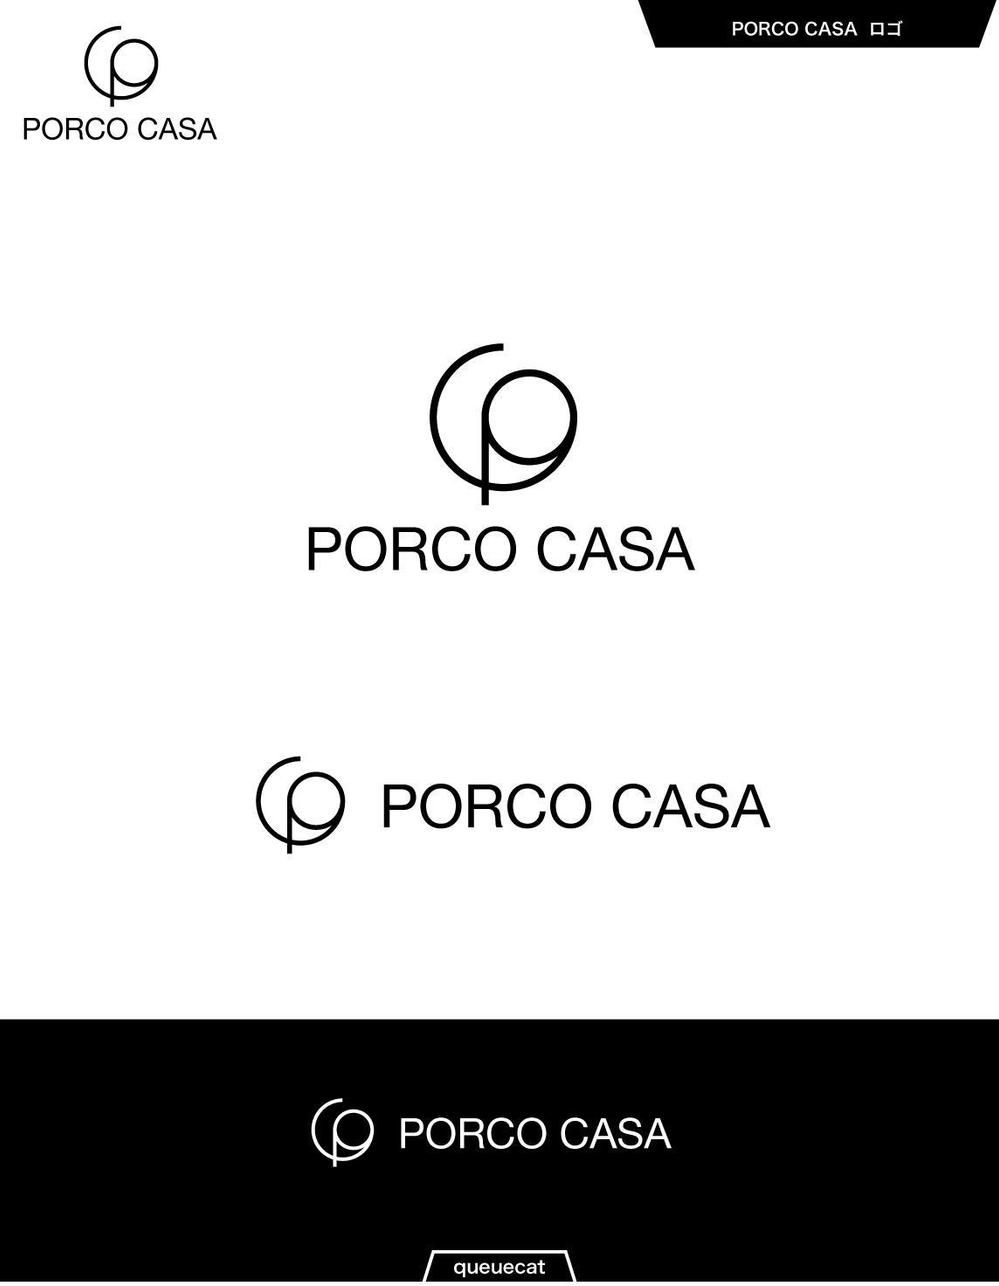 PORCO CASA2_1.jpg